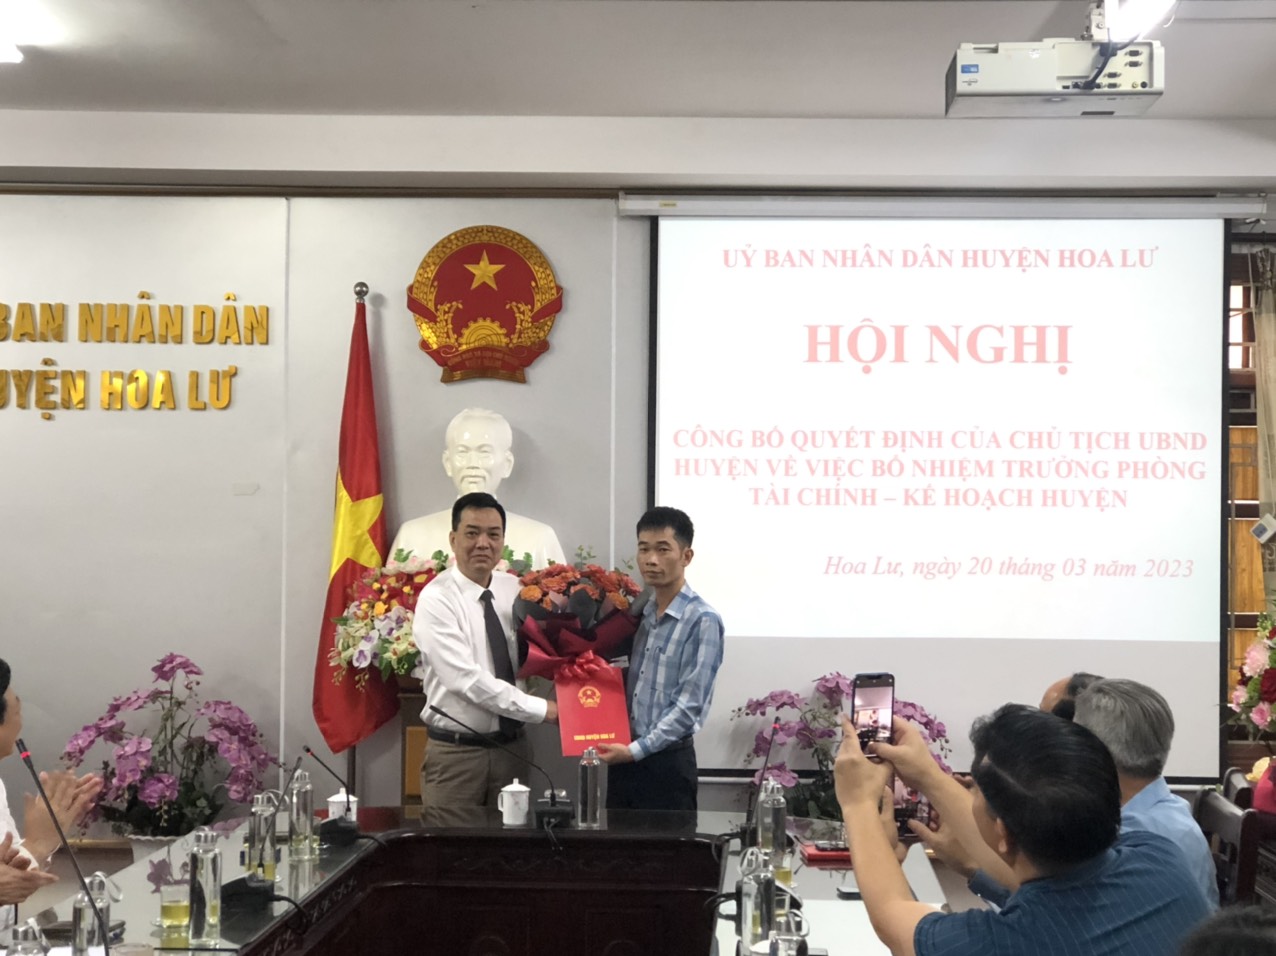 UBND huyện Hoa Lư công bố quyết định Bổ nhiệm Trưởng phòng Tài chính – Kế hoạch huyện